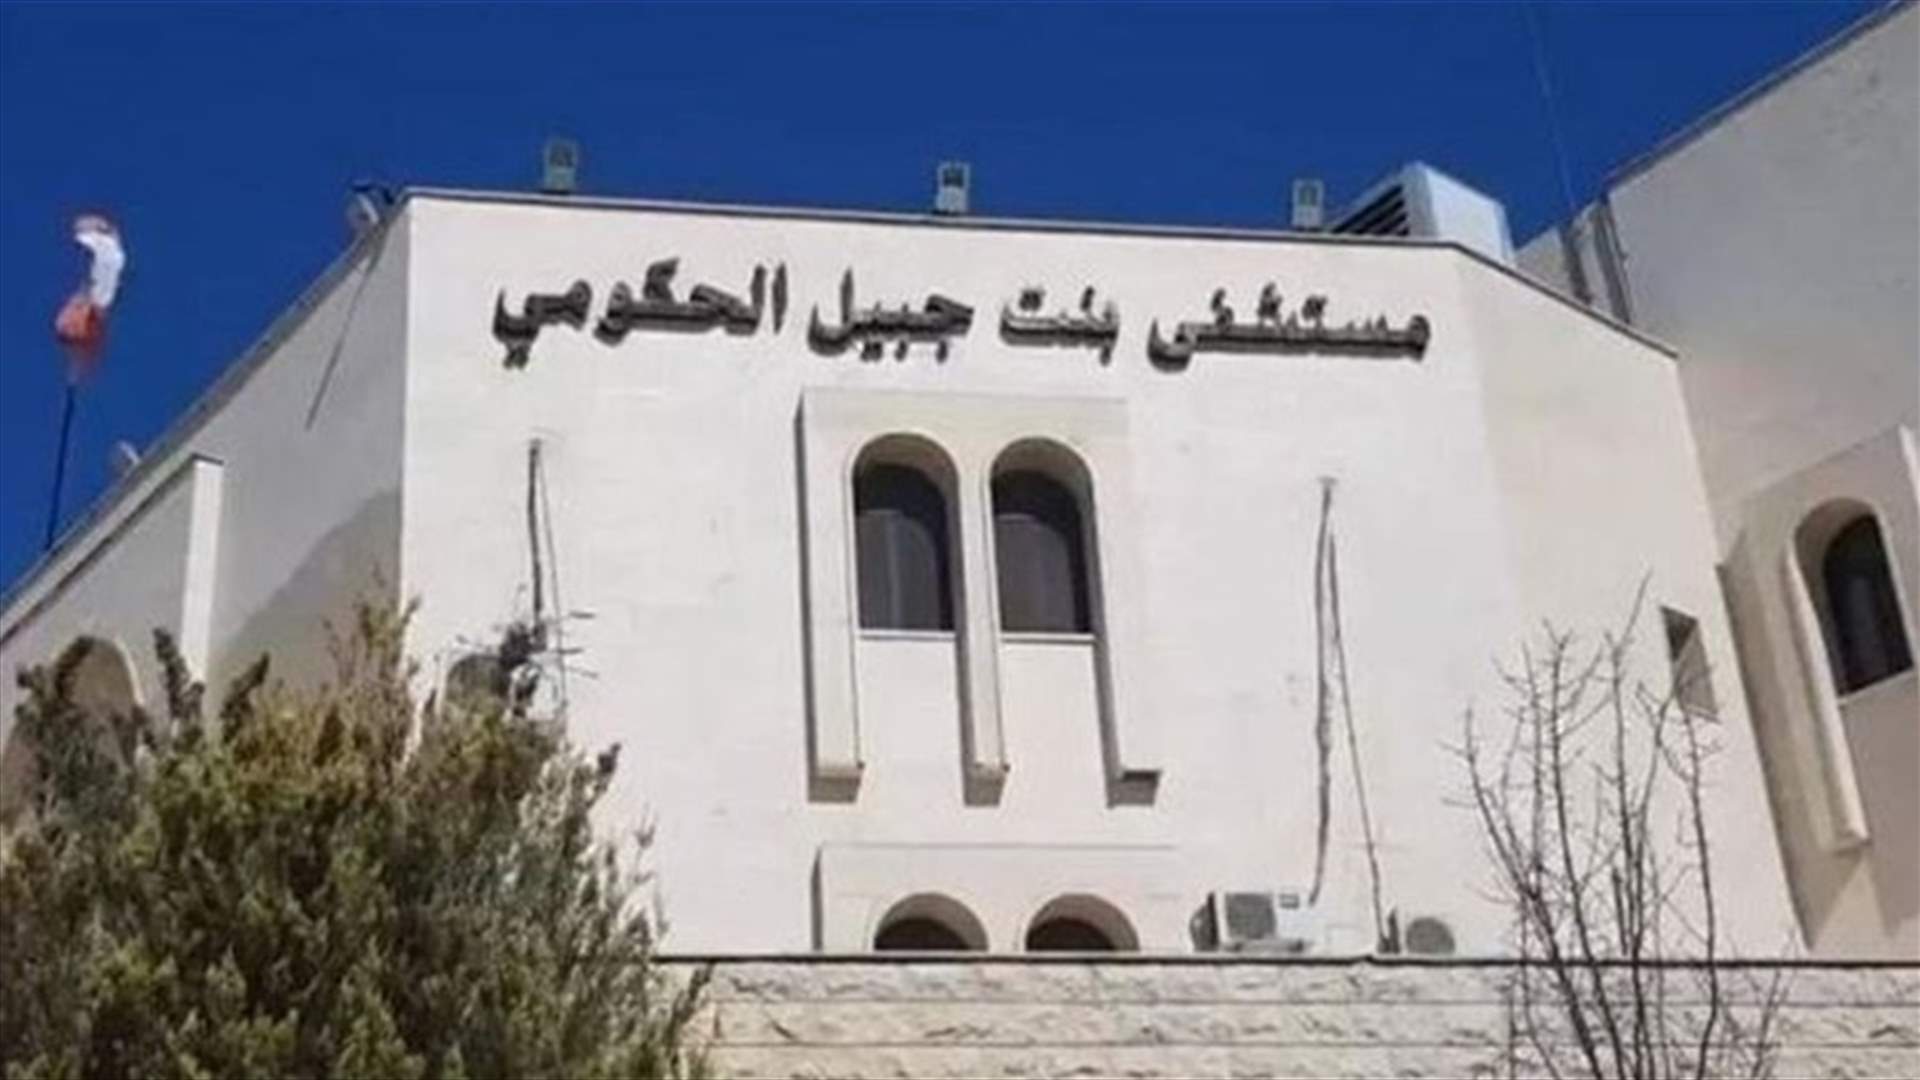 إضراب مفتوح لموظفي مستشفى بنت جبيل الحكومي